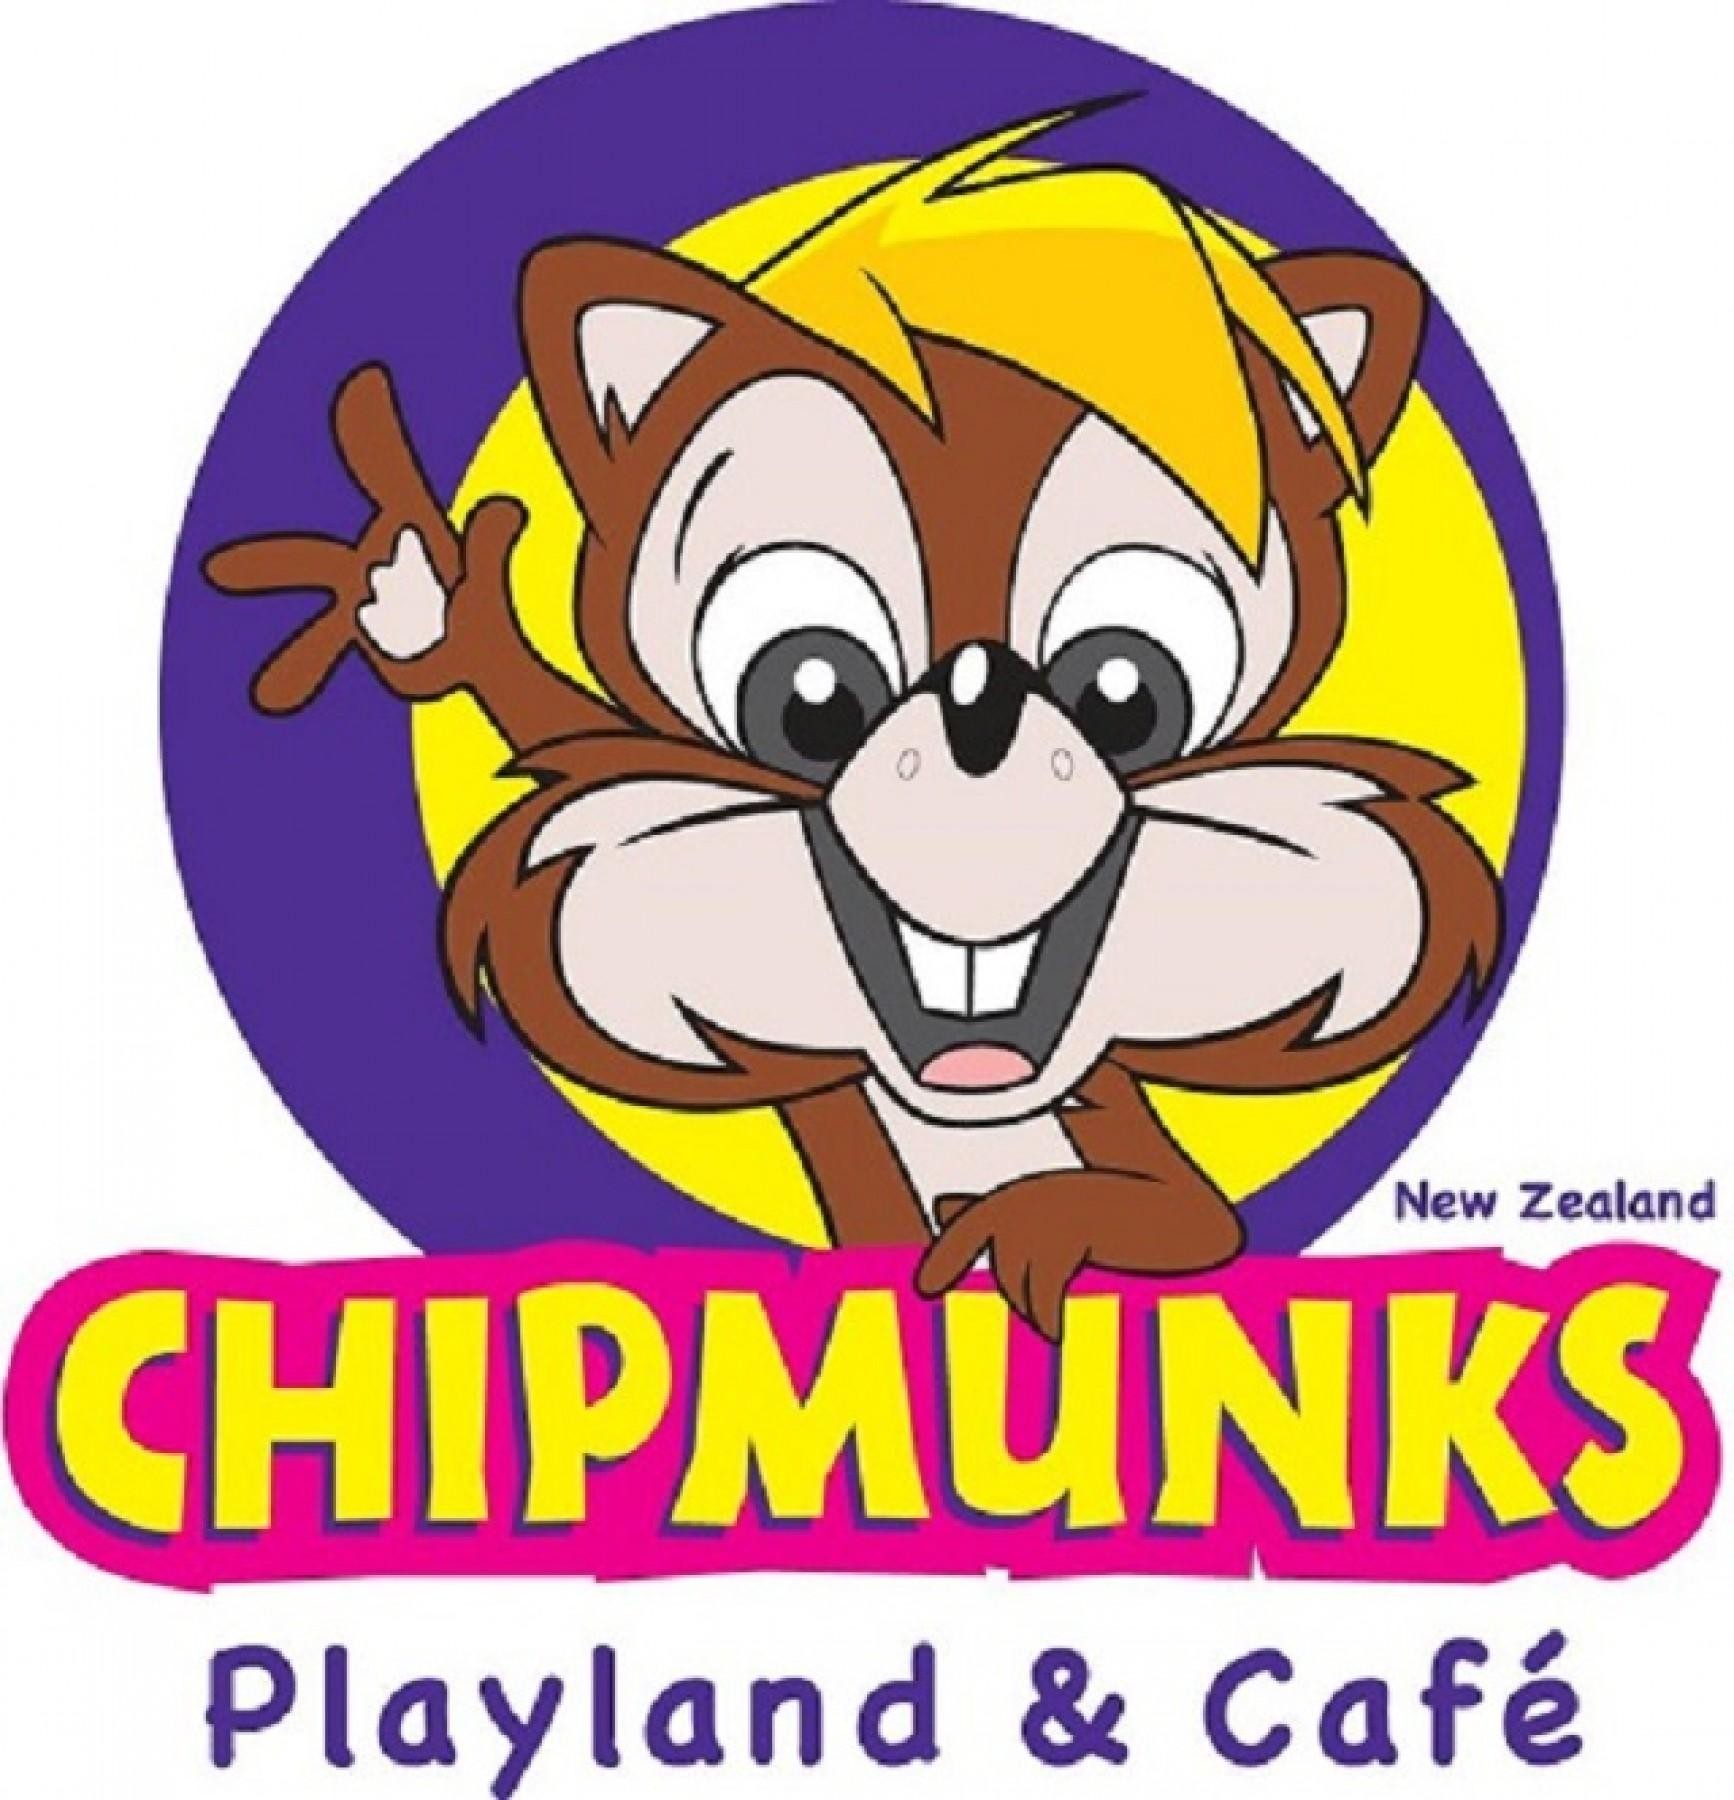 Children's Playland & Café Franchise  Chipmunks   $650,000  ...